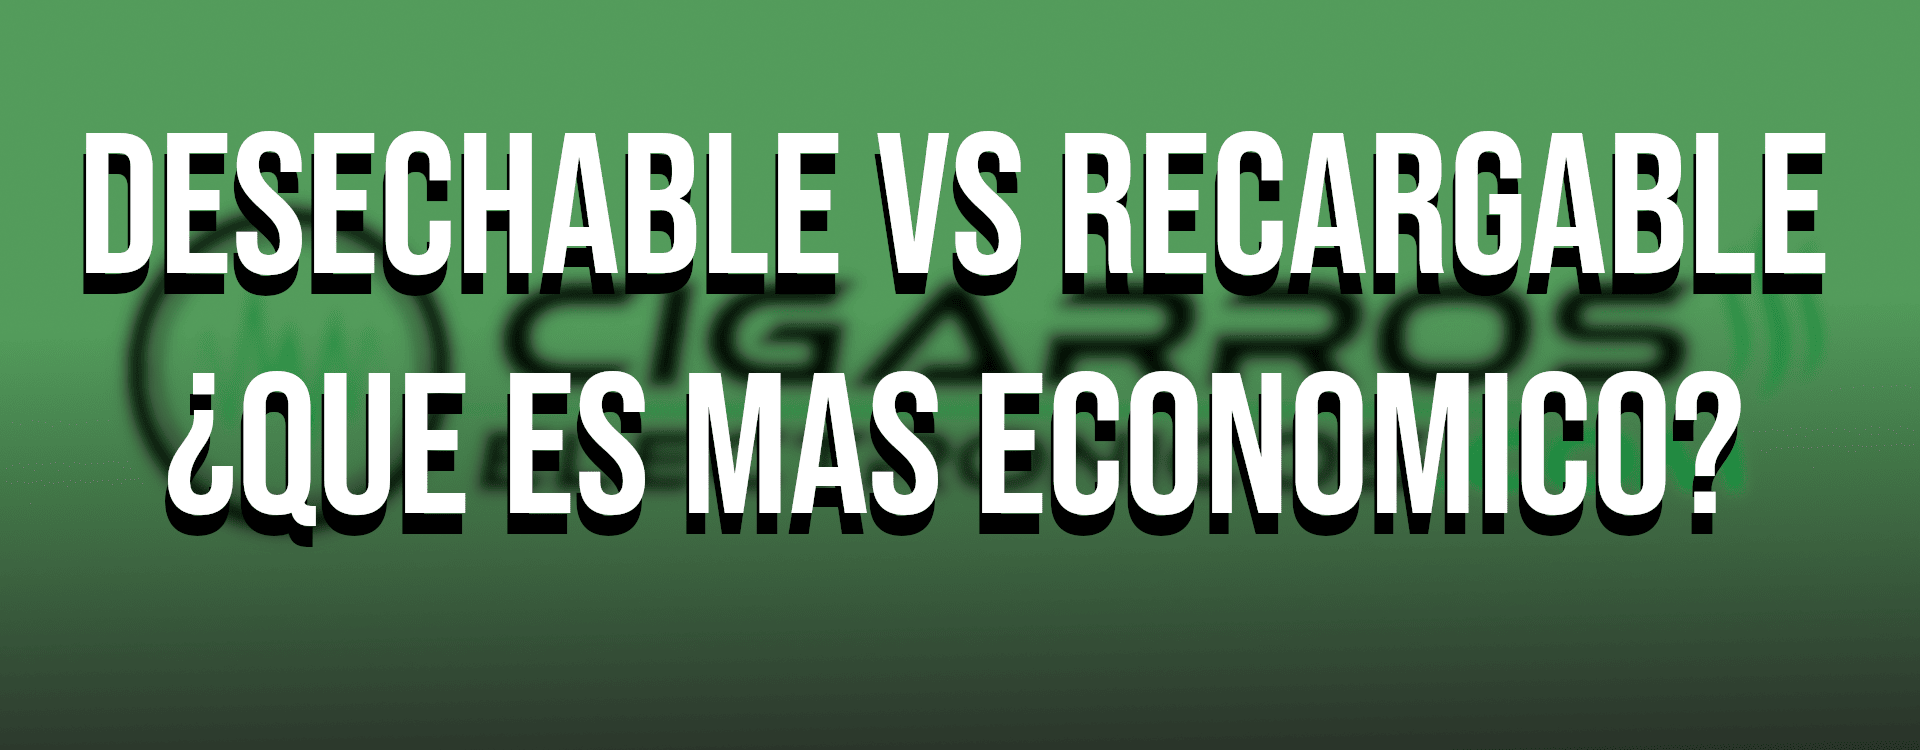 ¿Qué es más económico, el vaper desechable o el vaper recargable?